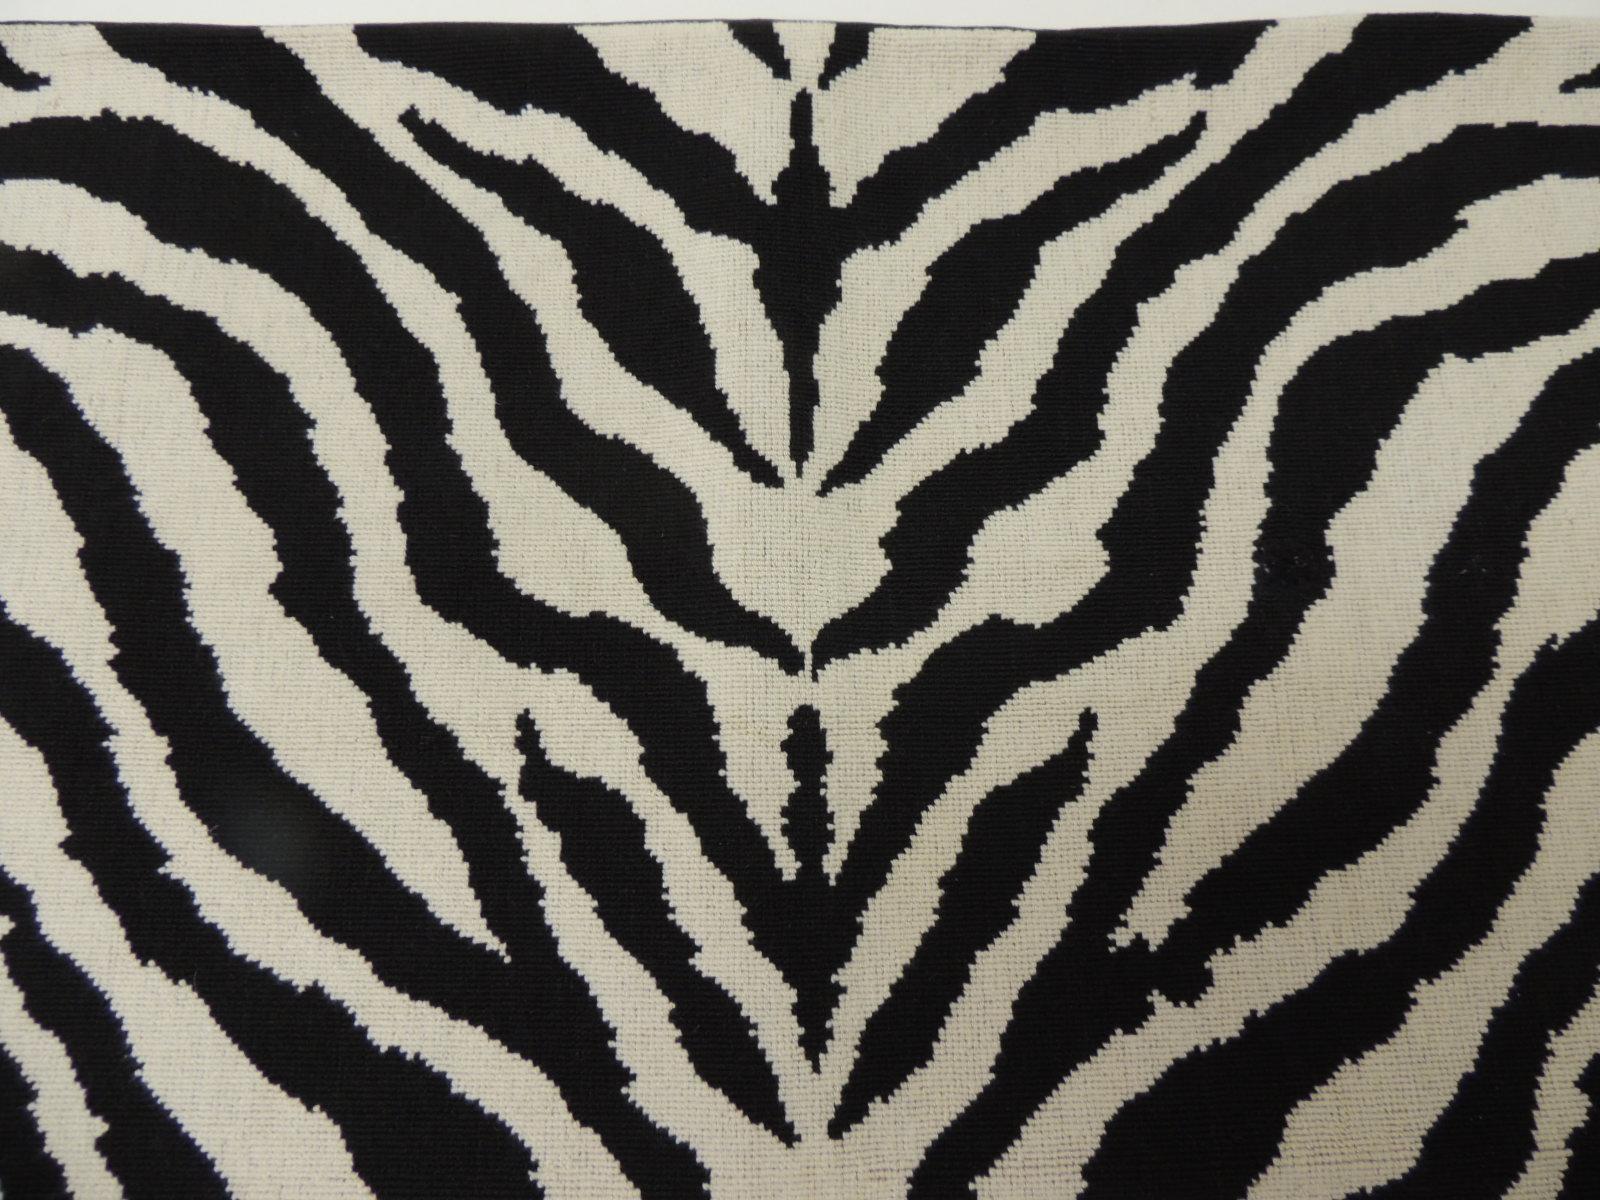 Vintage Schwarz und Weiß Zebra Muster Wandteppich Stil dekorative Nackenrolle Kissen (Hollywood Regency)